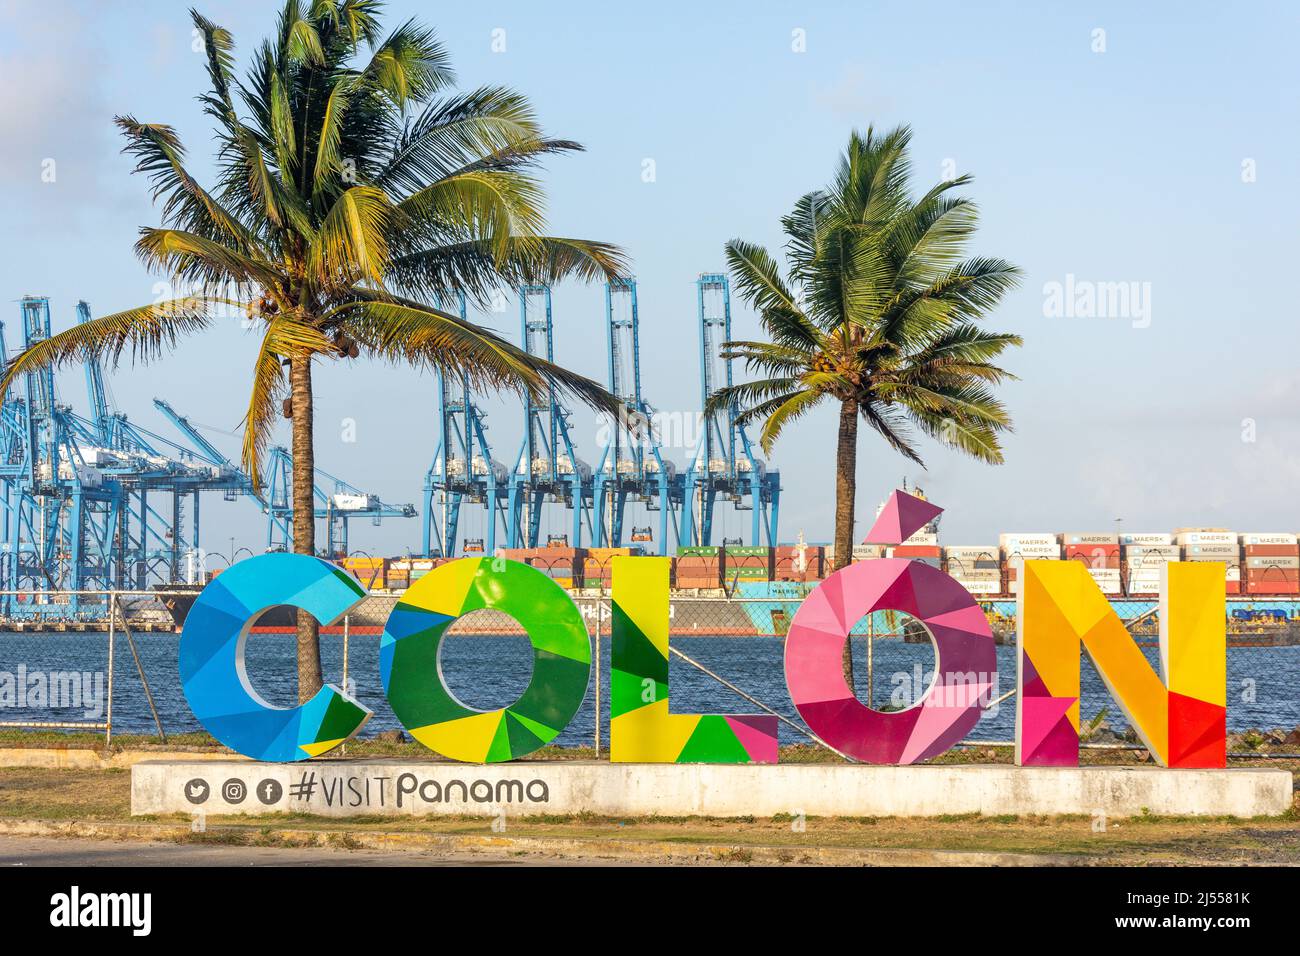 Colon sign and harbour, Colon, Colon Province, Republic of Panama Stock Photo